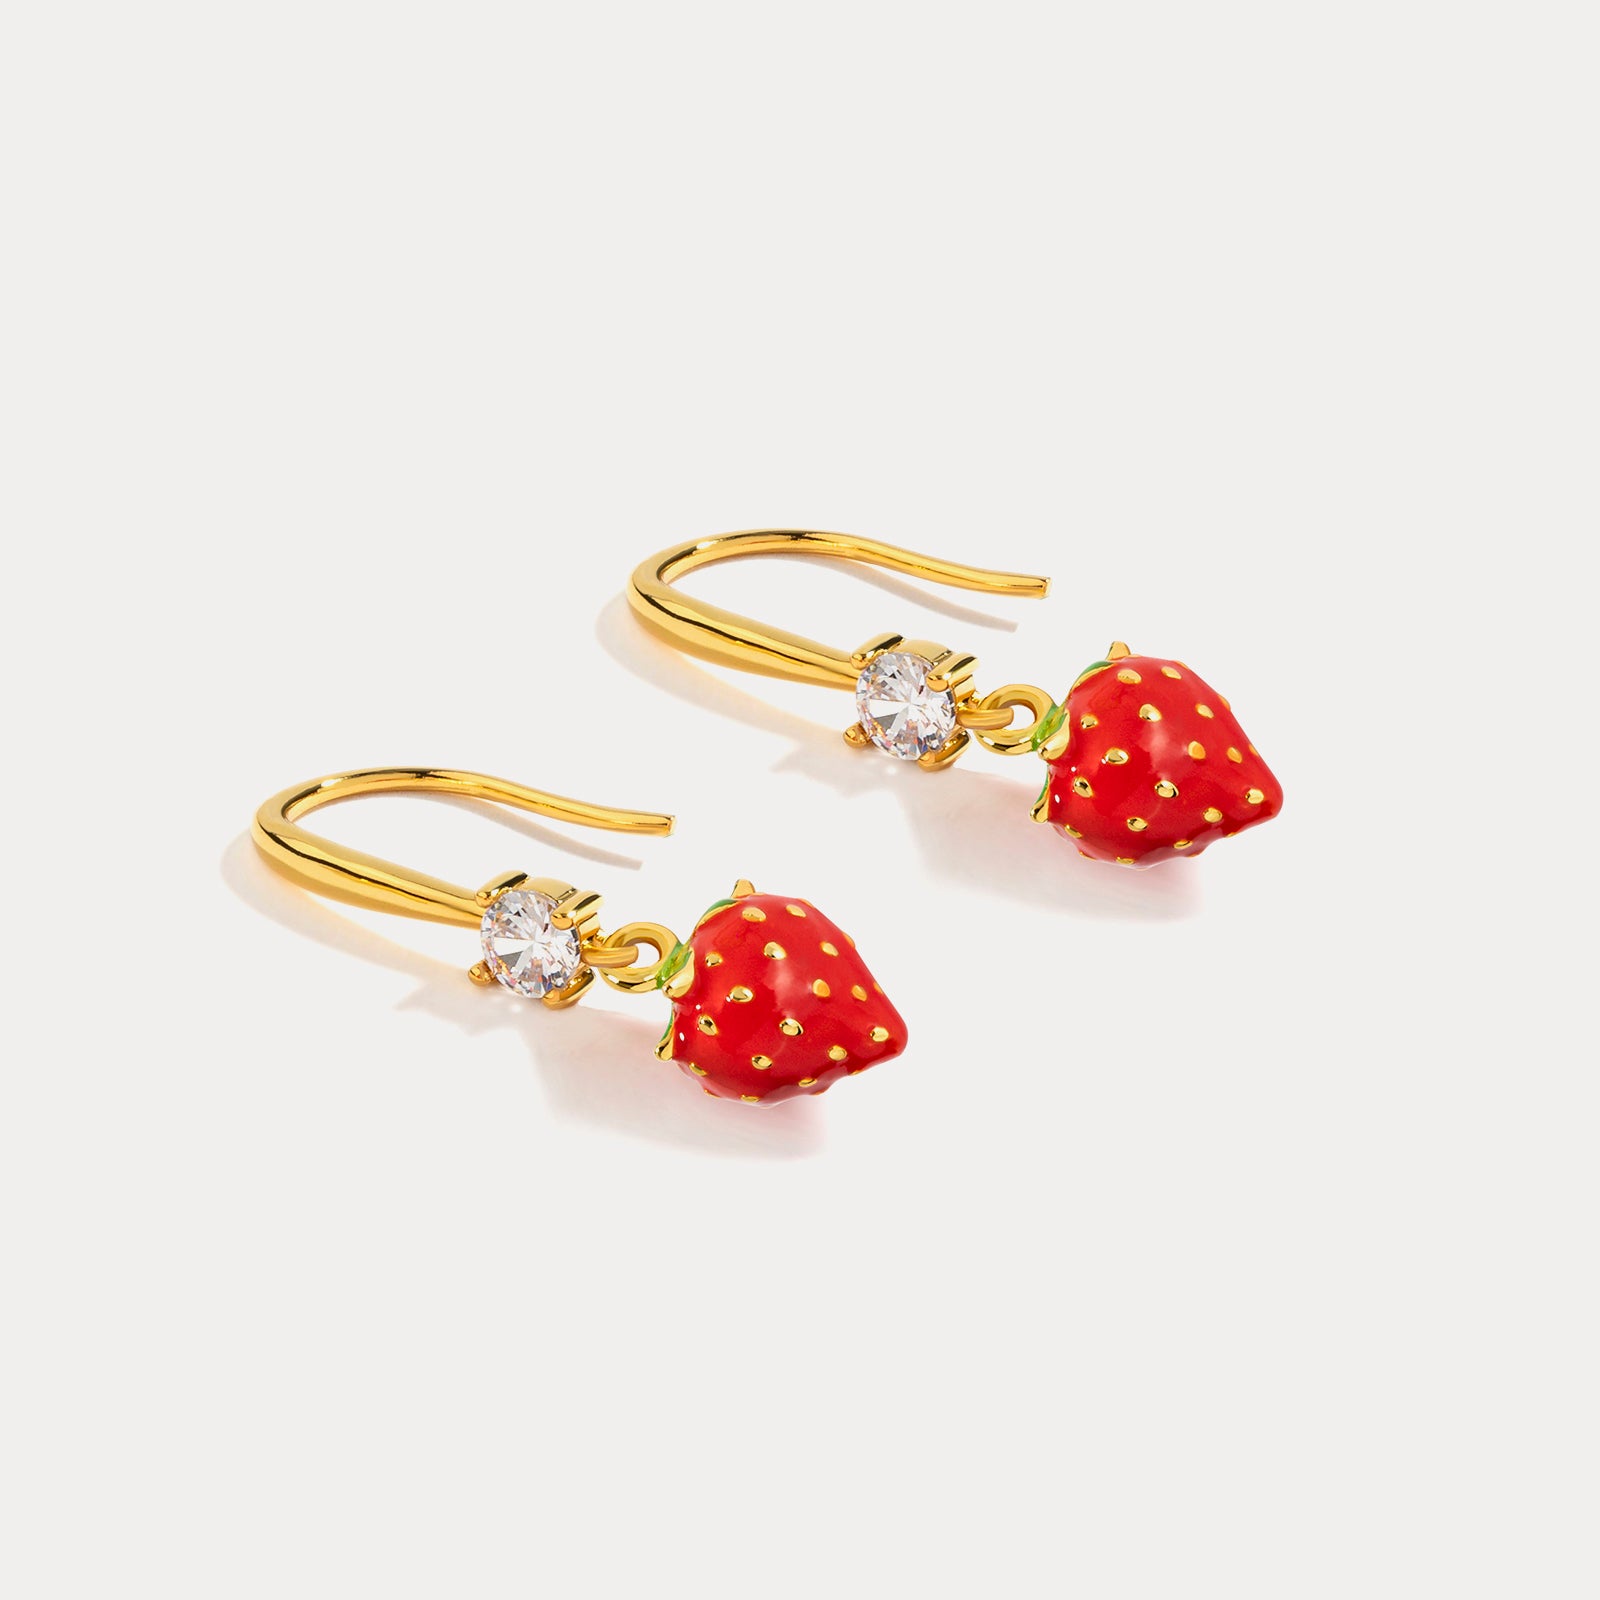 Strawberry Dangling Earrings